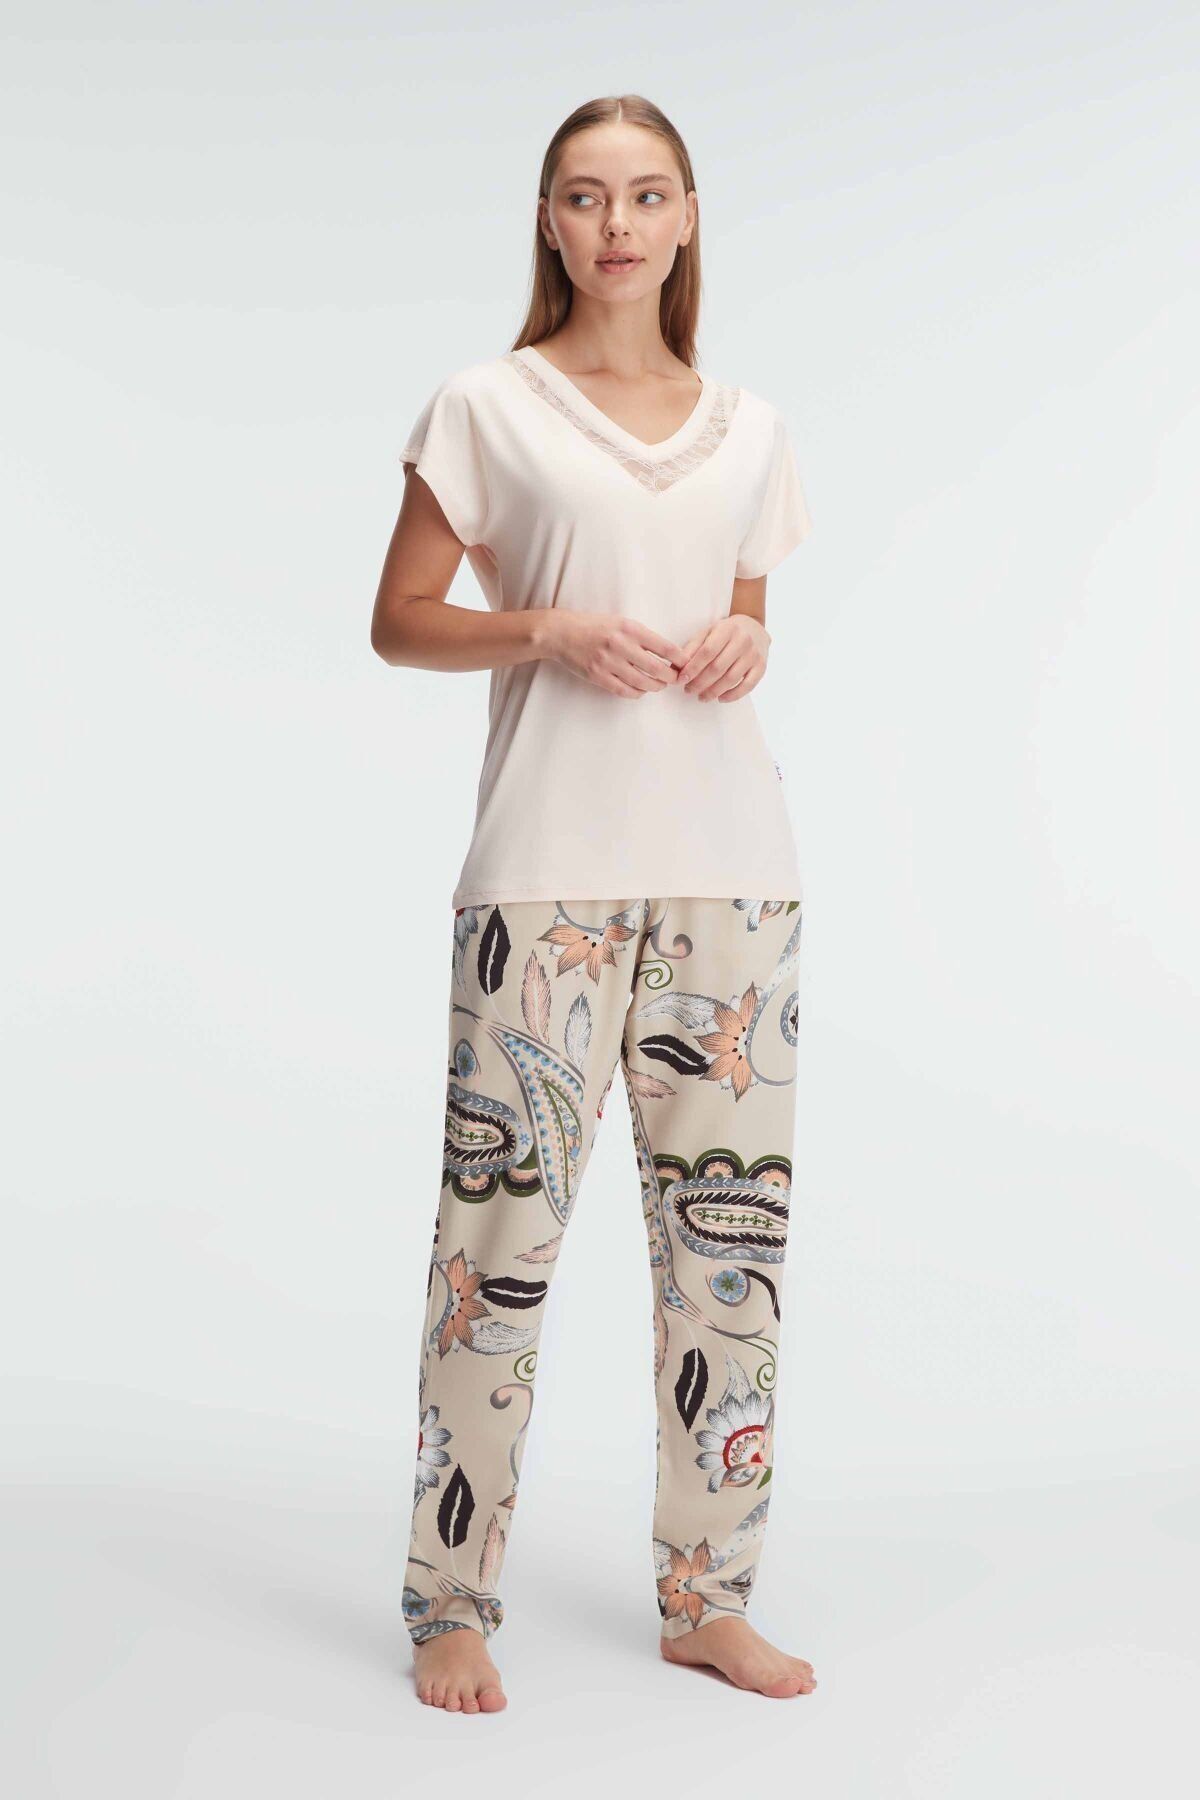 Anıl 9899 Kısa Kol V Yaka Kadın Viskon Çiçek Desenli Yazlık Örme Dantel Detaylı Pijama Takımı